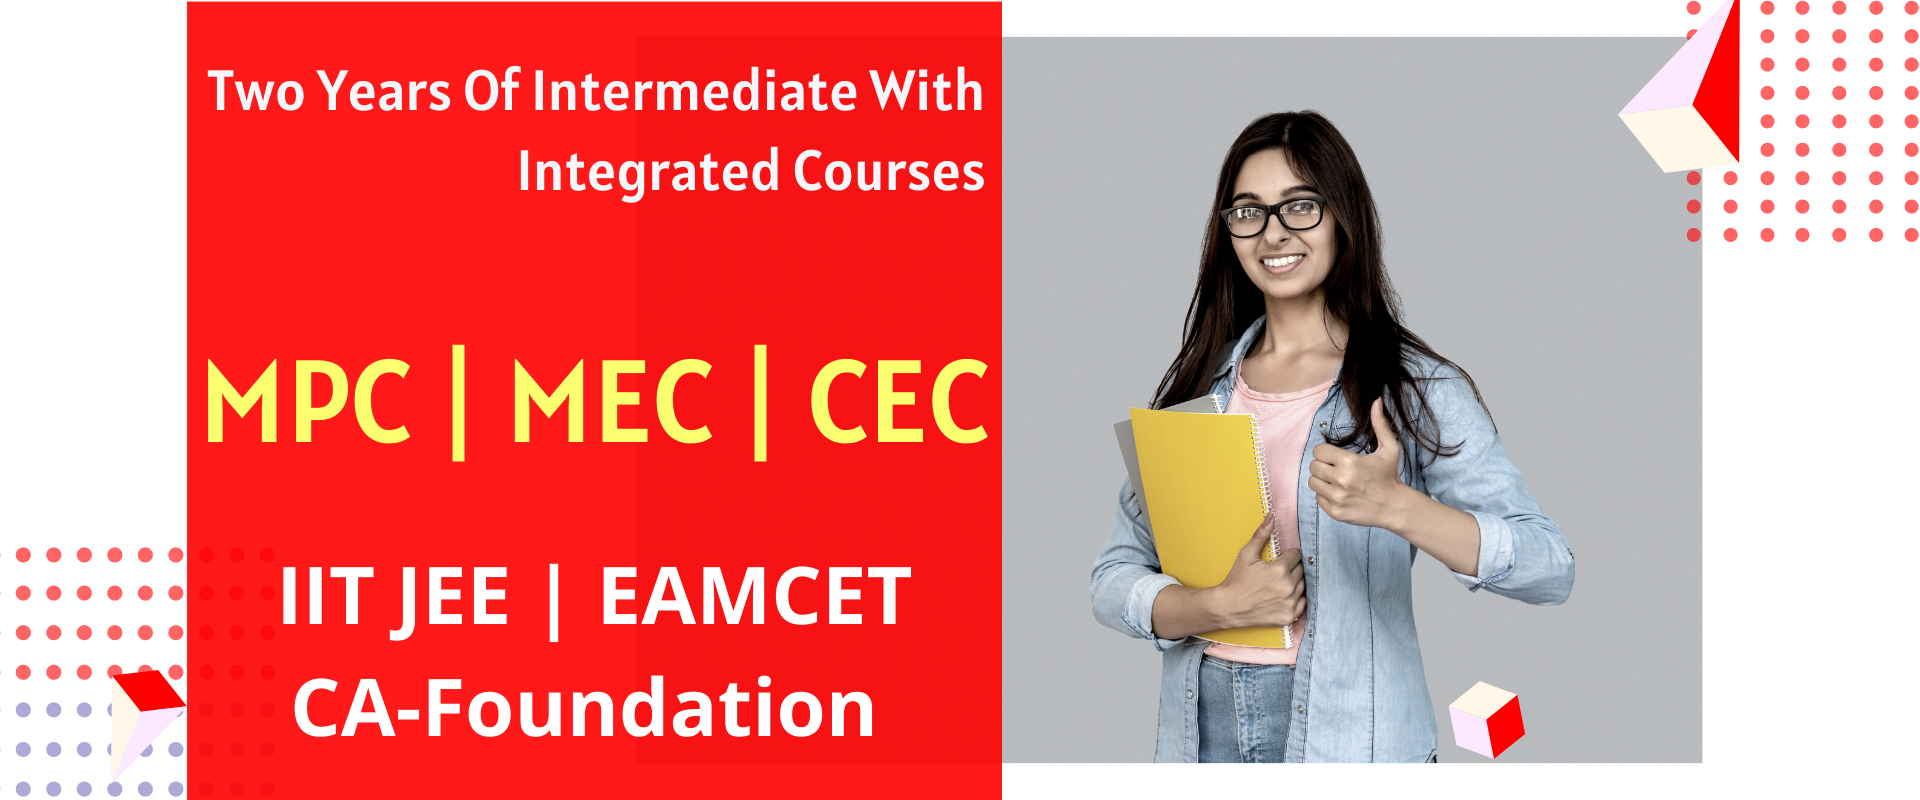 MPC MEC and CEC Courses